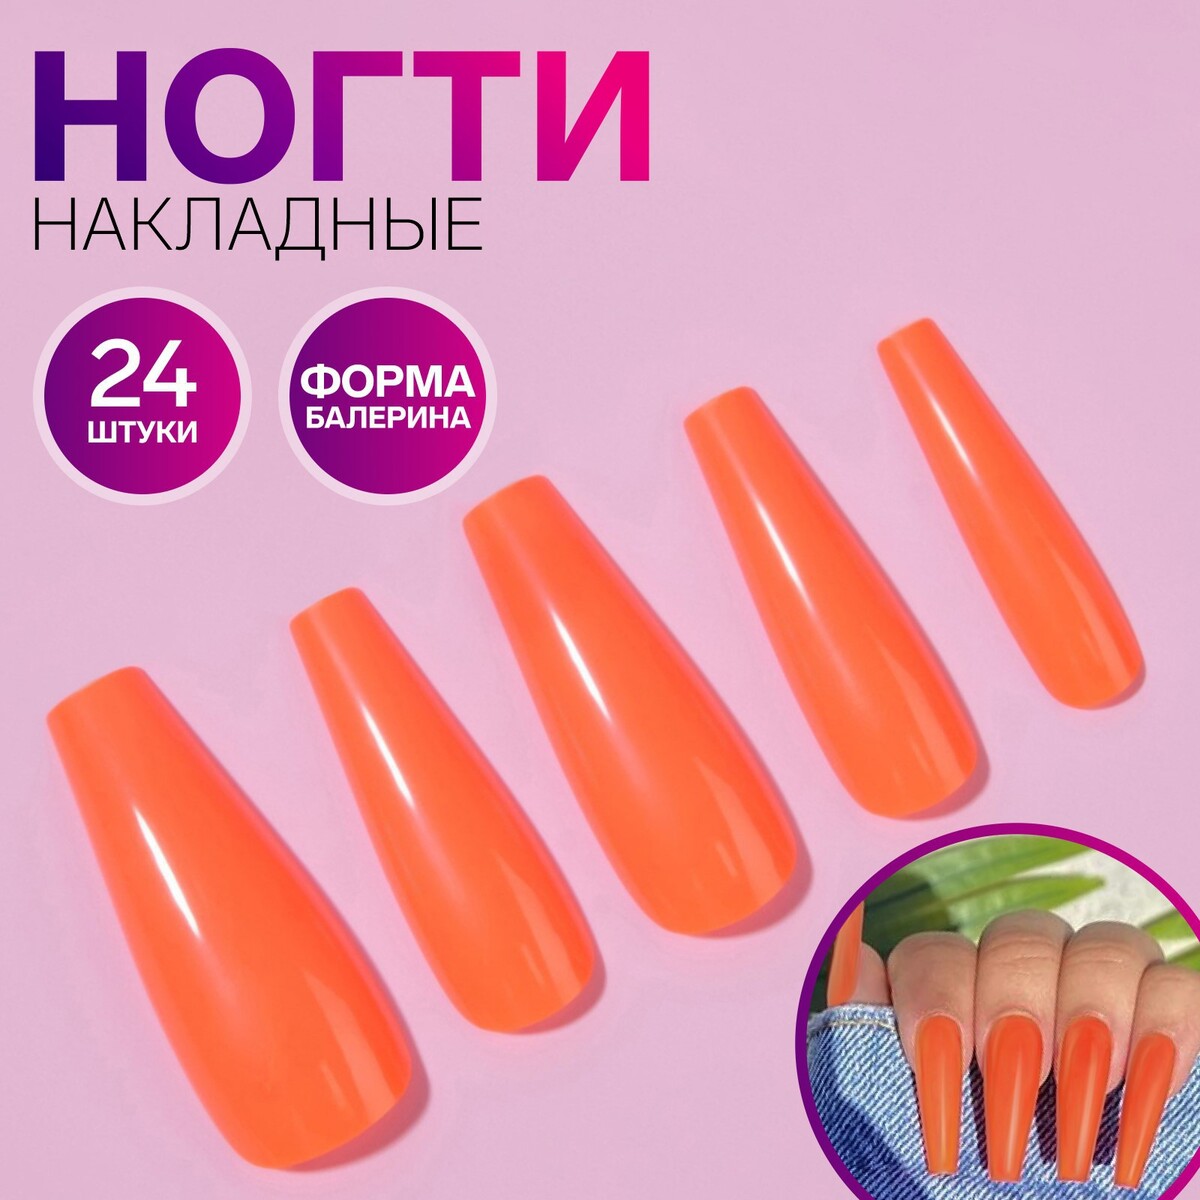 Накладные ногти, 24 шт, форма балерина, цвет неоновый оранжевый вита балерина